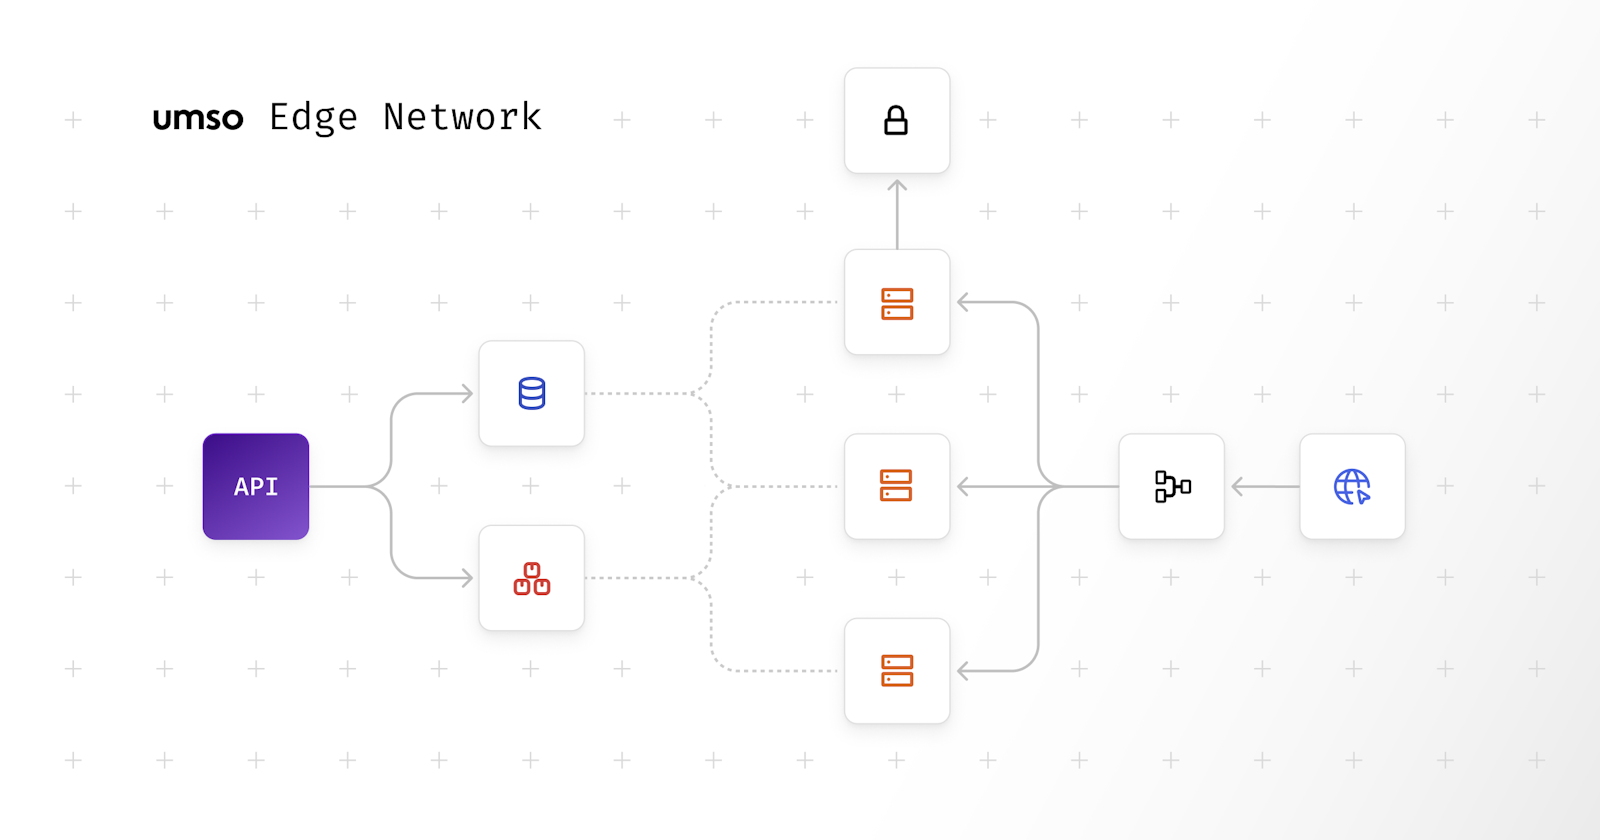 umso edge network schematic